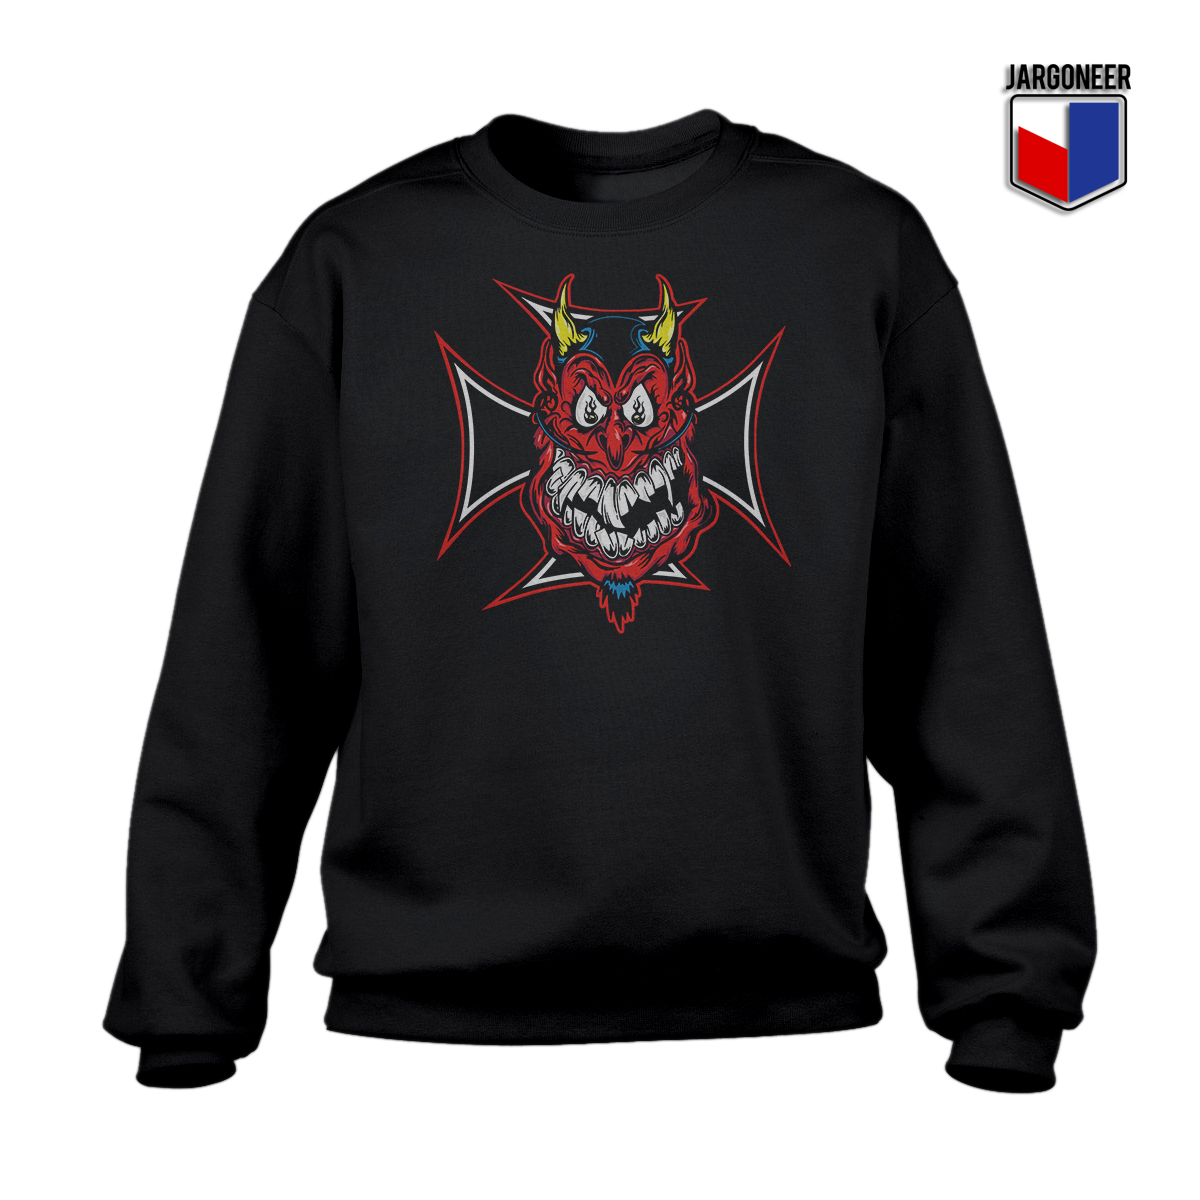 Chopper Devil Black SS - Shop Unique Graphic Cool Shirt Designs